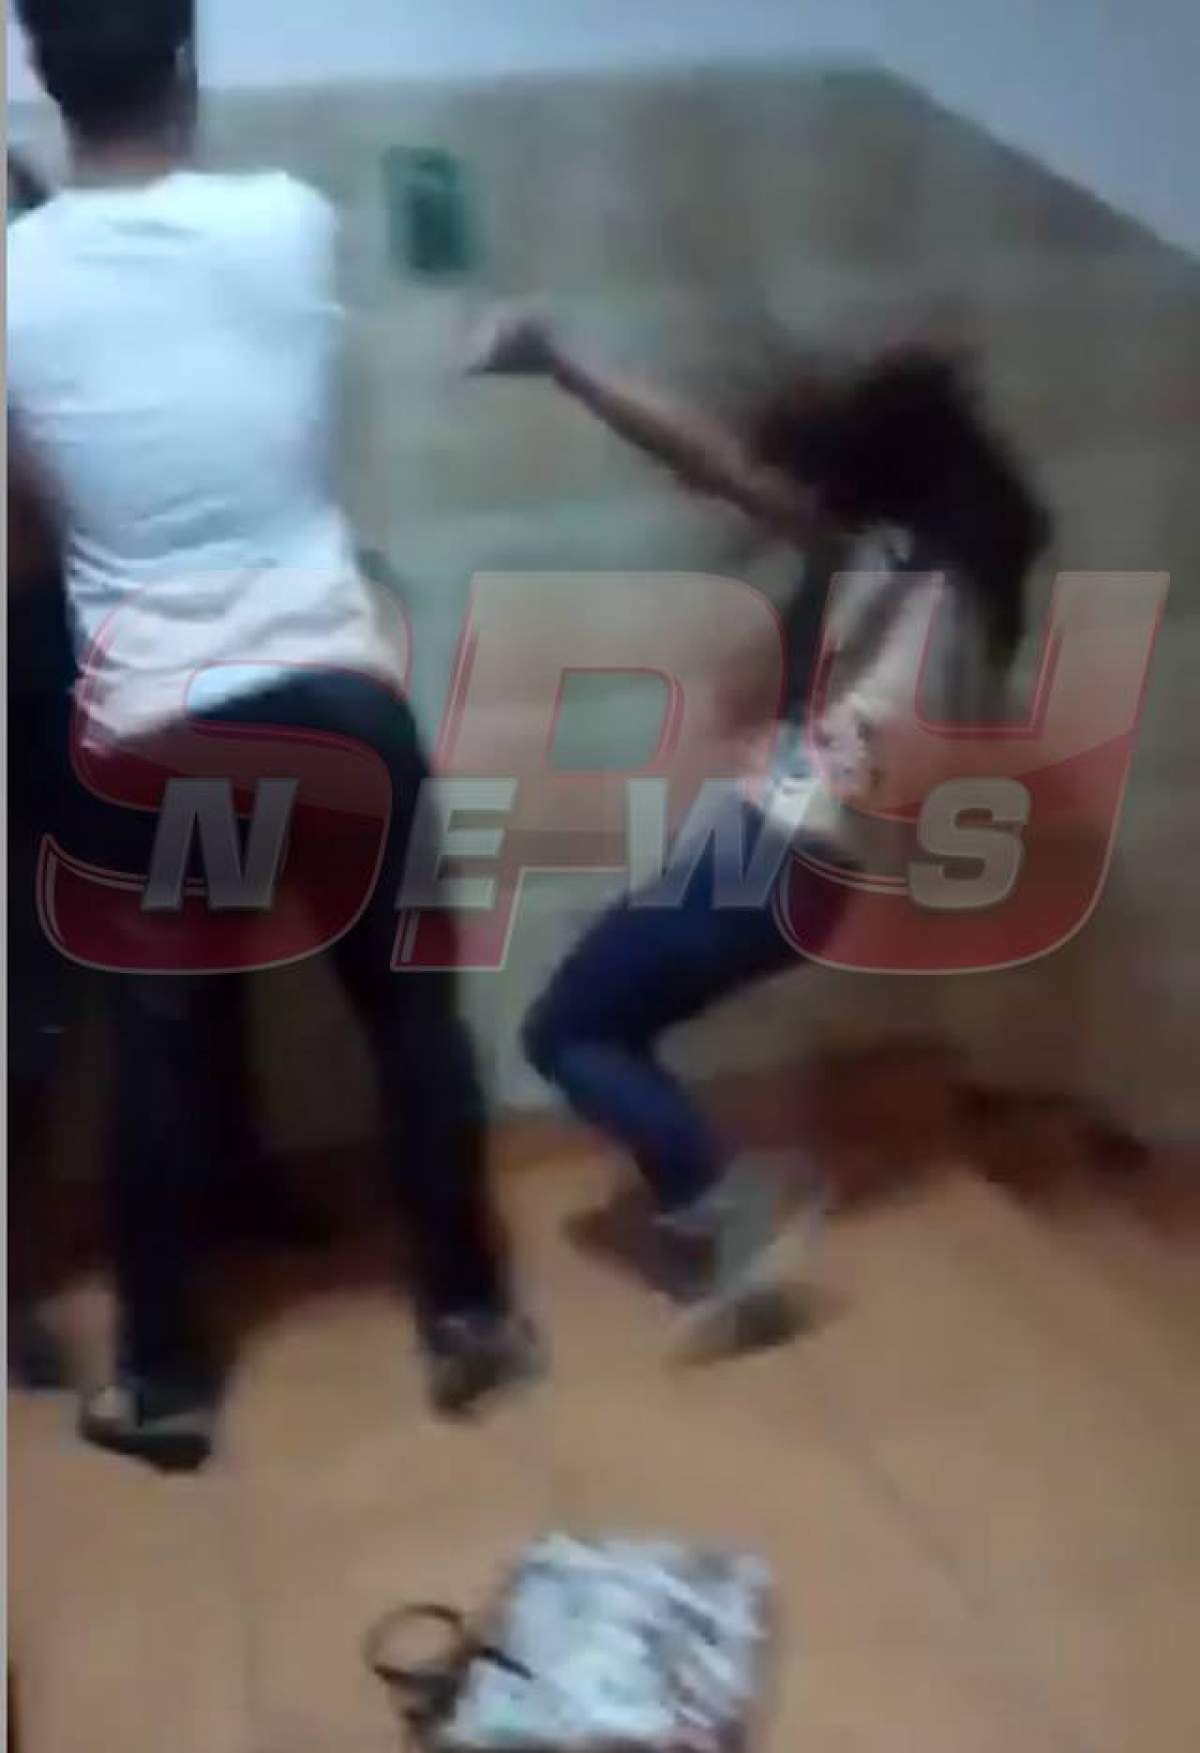 VIDEO / Imagini ŞOCANTE într-un liceu din Capitală! O elevă şi-a bătut cu bestialitate colega, sub privirile tuturor!